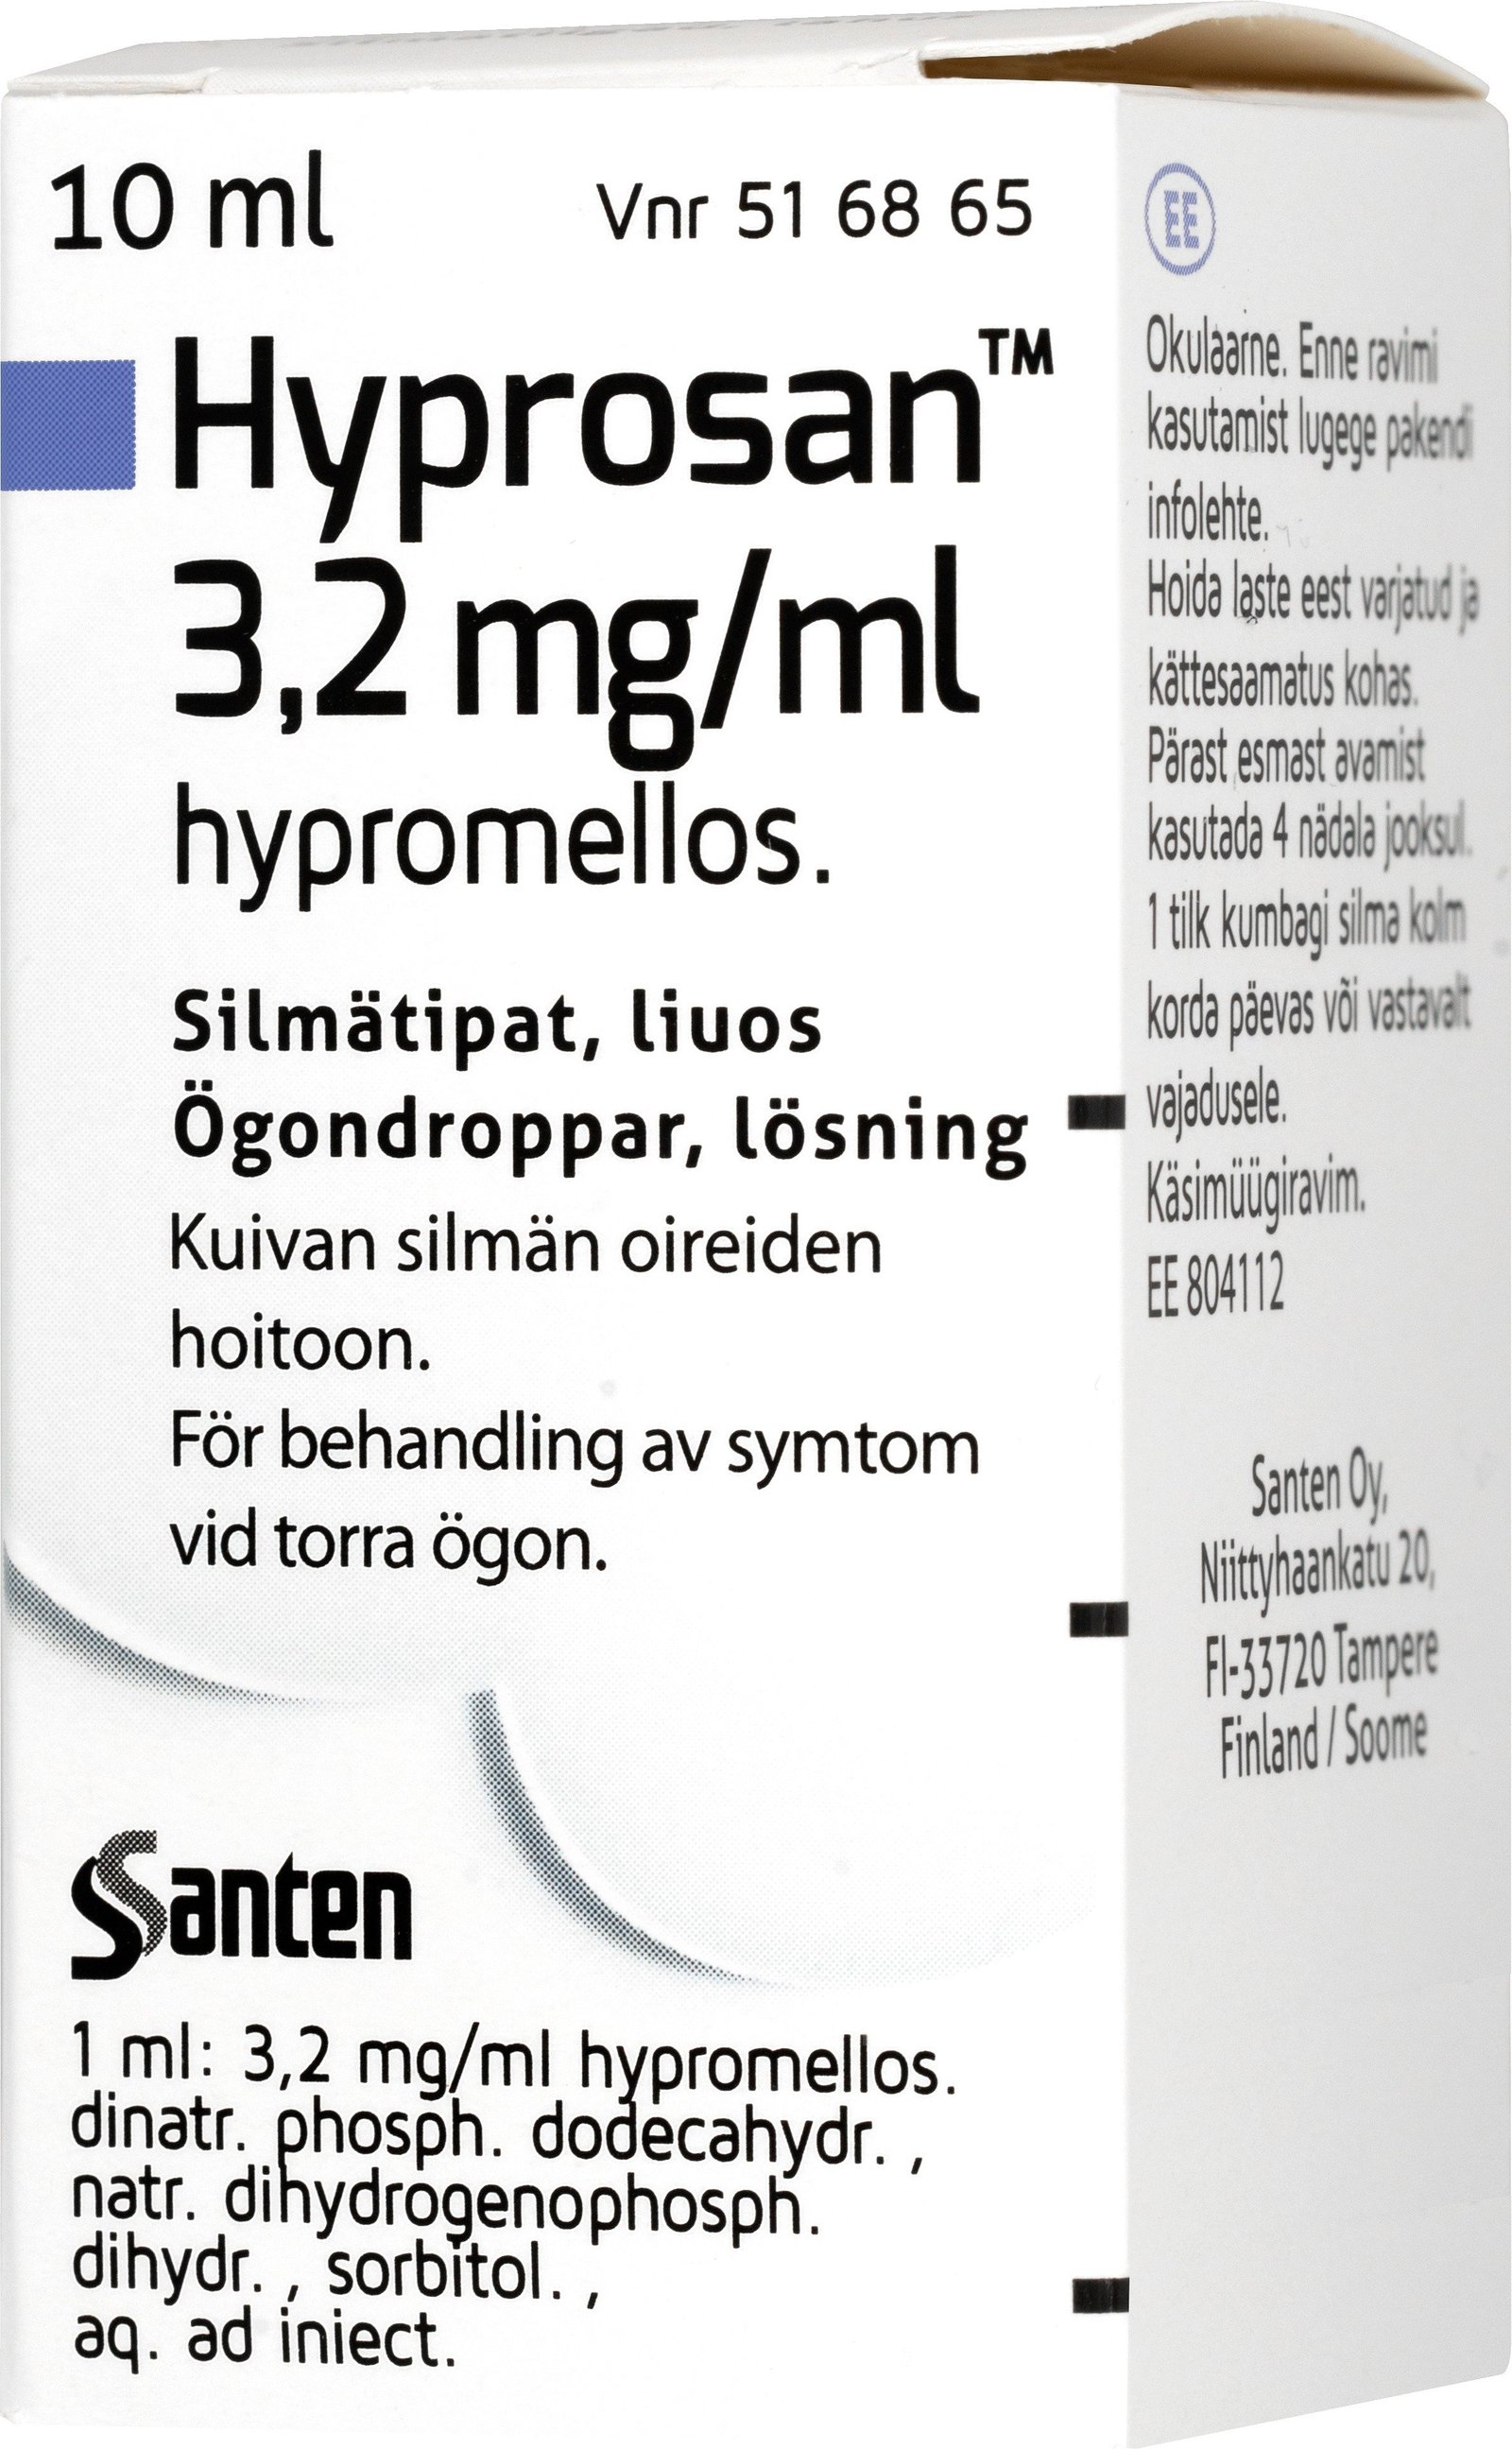 Hyprosan Ögondroppar 3,2 mg/ml 10 ml